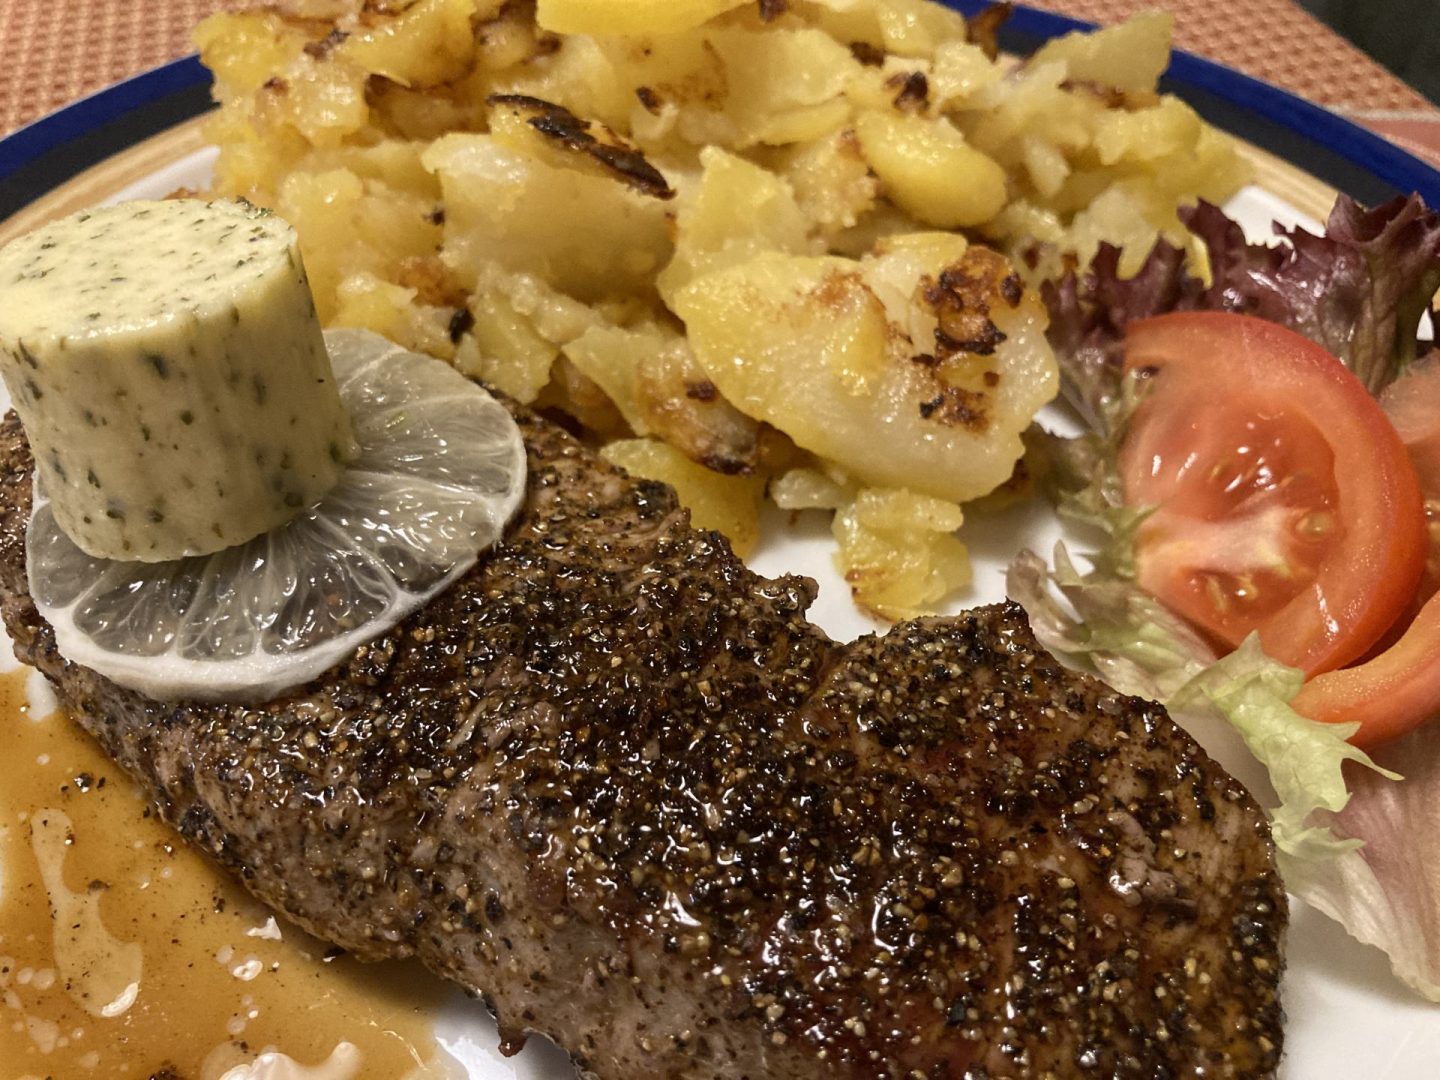 Erfahrung Bewertung Kritik Gasthof zum Krebs Steak mit Bratkartoffeln Foodblog Sternestulle